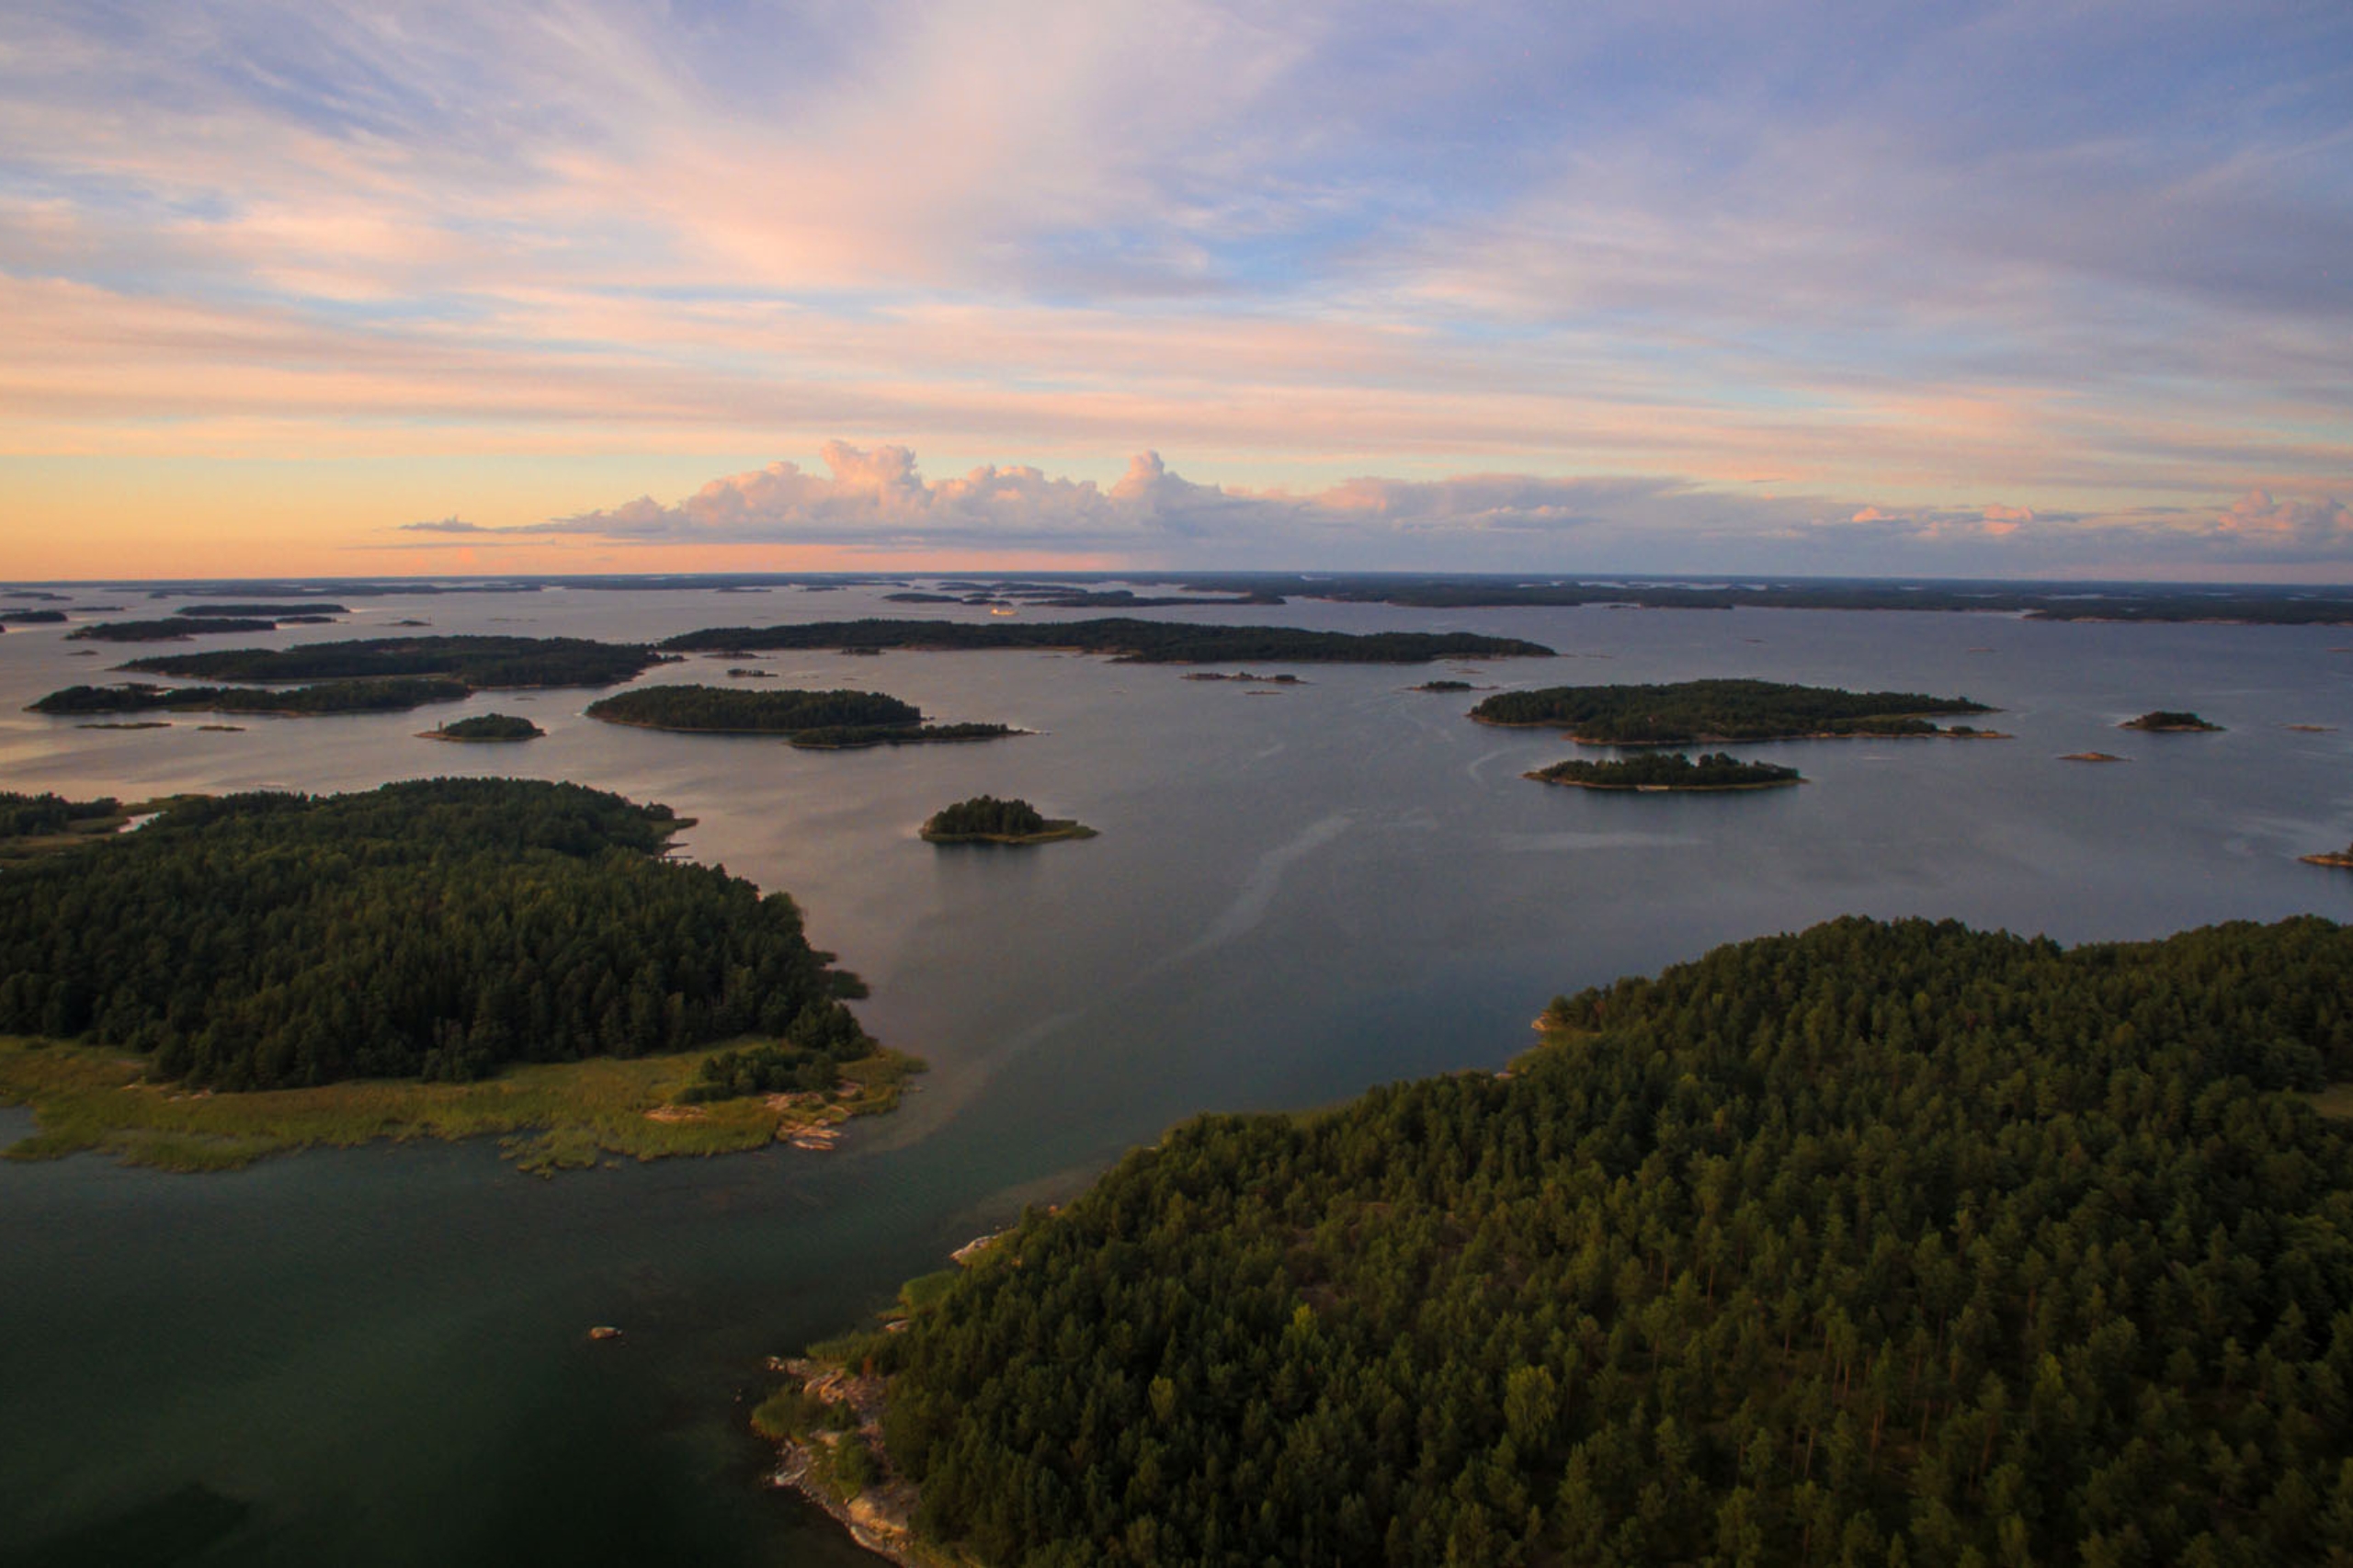 Finnland ist die Heimat des grössten Archipels der Welt mit mehr als 80’000 Inseln - auf einer davon befindet sich das Mossala Island Resort.